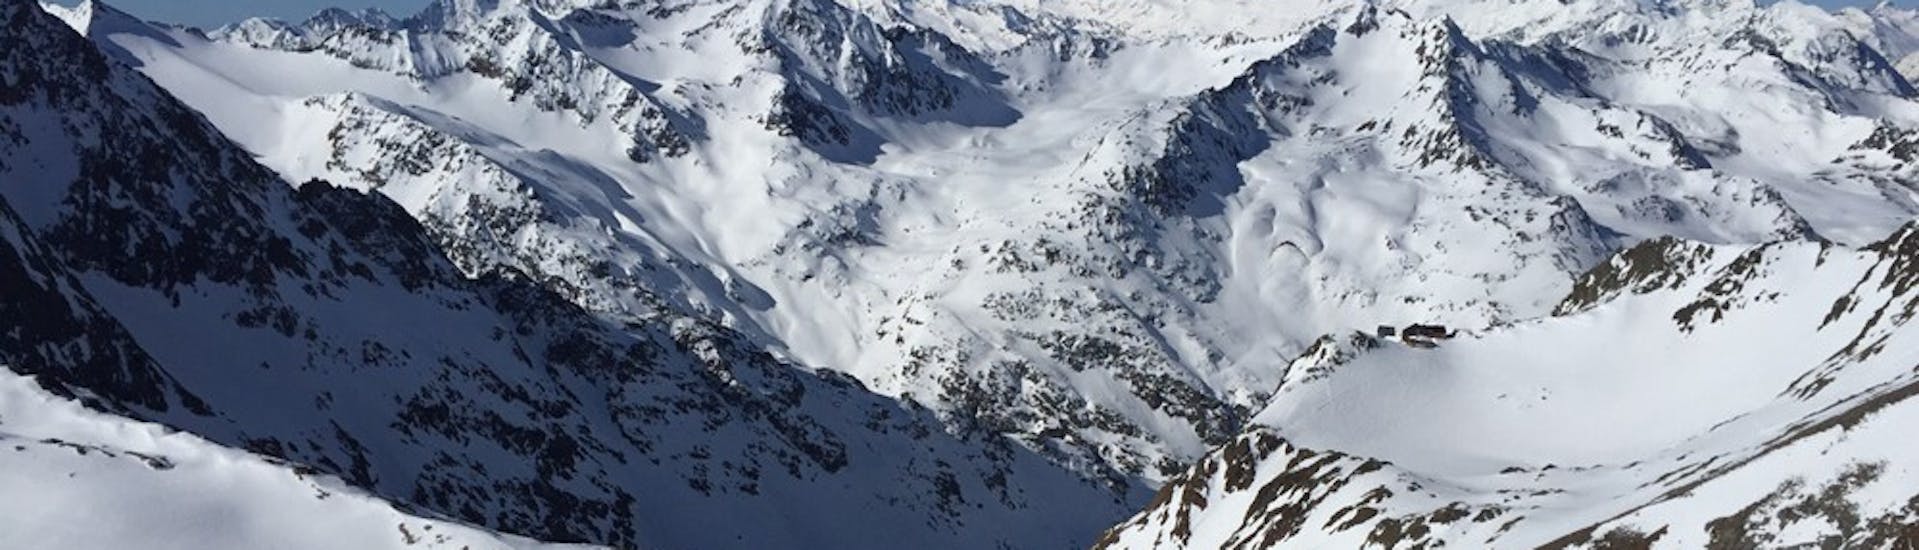 Grande vista sulle montagne del comprensorio sciistico dell'Alto Sangro. Posto perfetto per una delle lezioni private di snowboard per bambini e adulti di tutti i livelli.